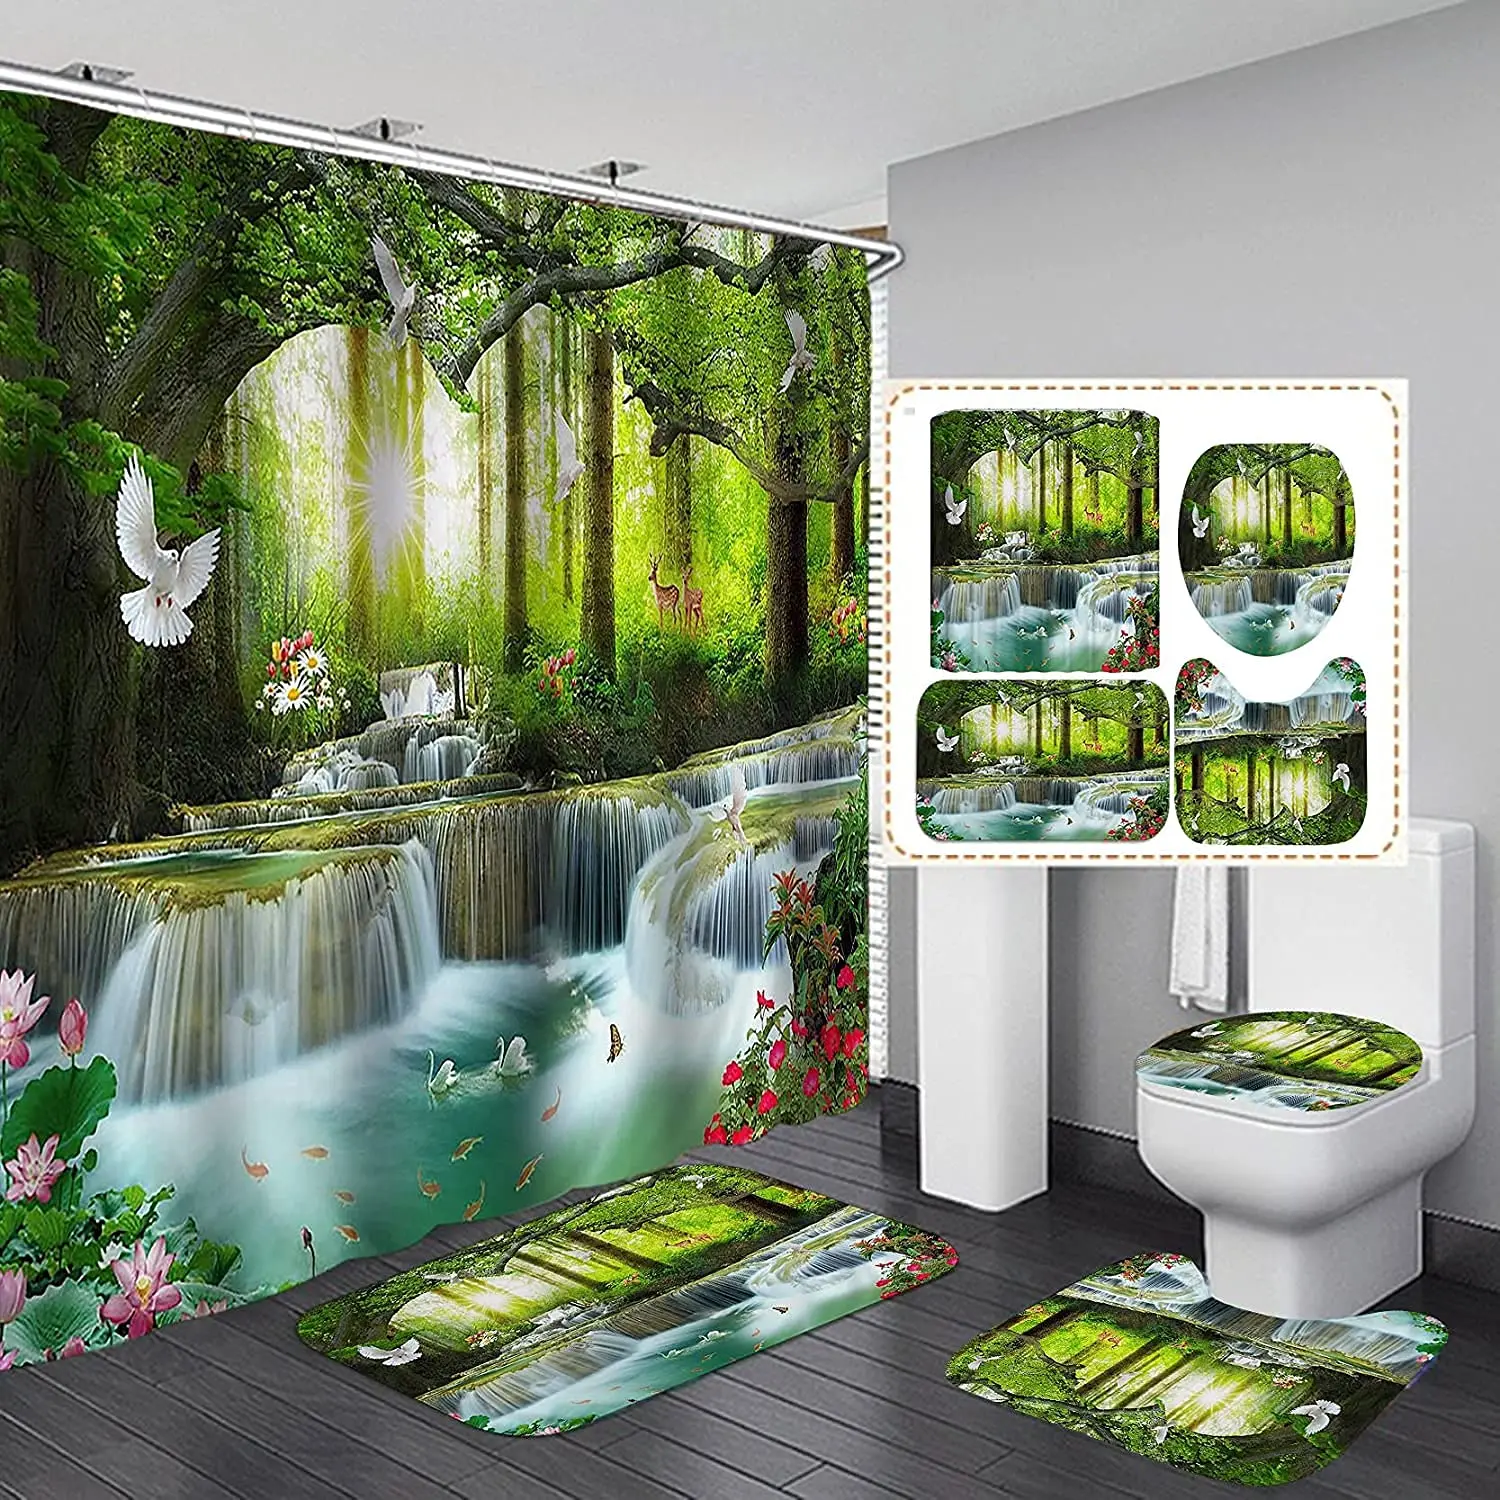 

Набор водонепроницаемых штор для душа, занавеска с рисунком природного пейзажа леса, водопада, с ковриками для ванной комнаты, чехлом для унитаза, крючками